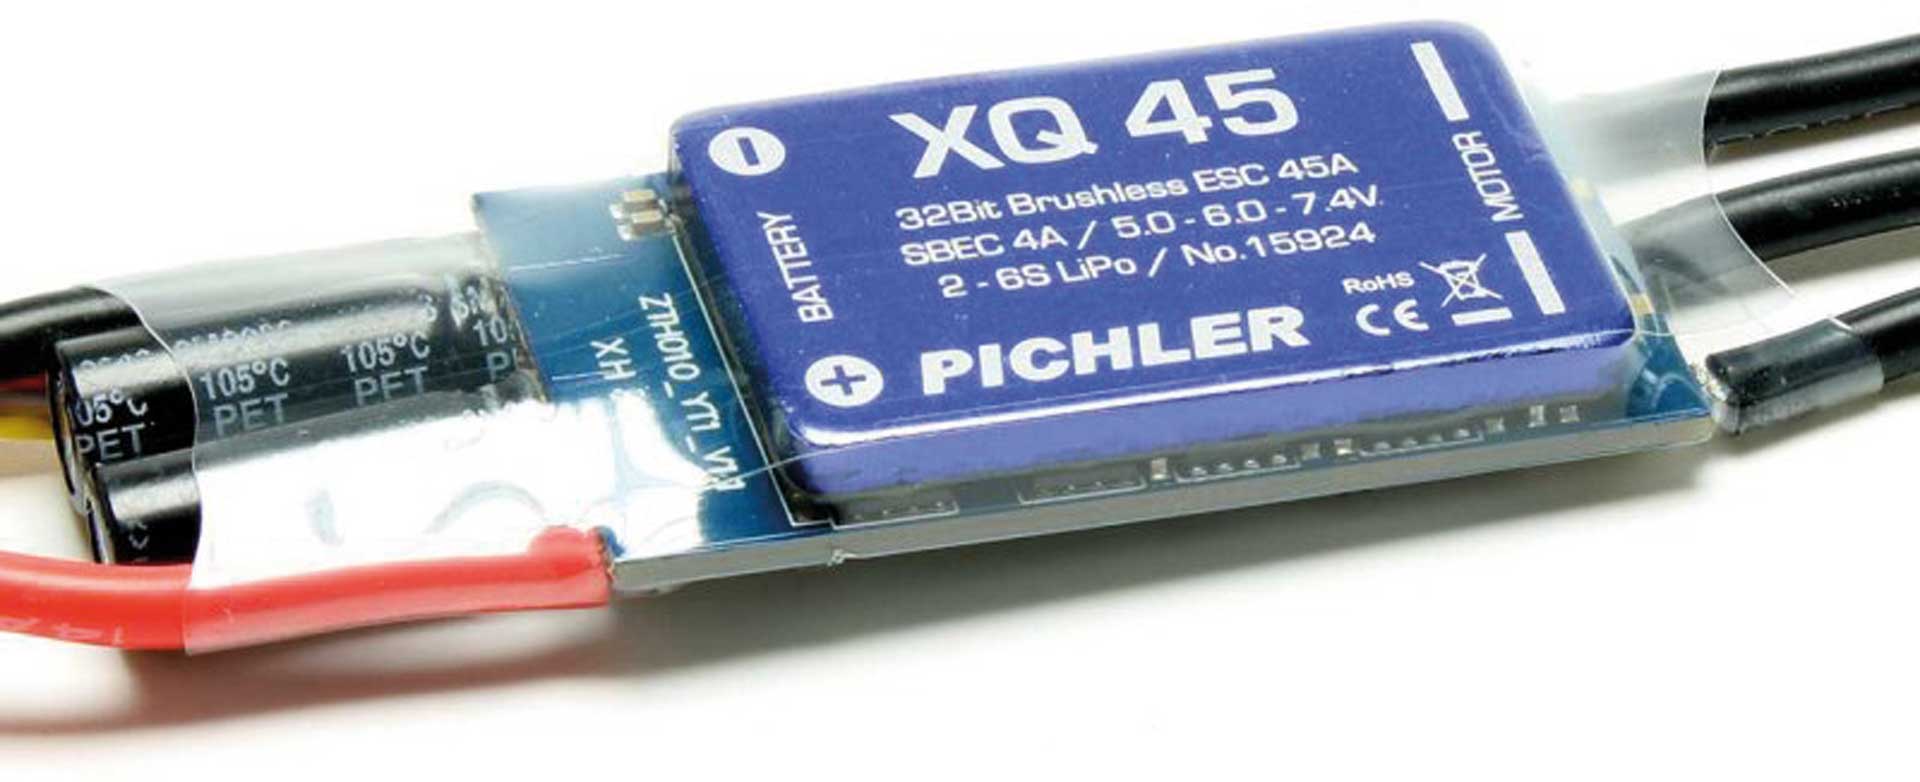 Pichler Brushless ESC XQ+ 45